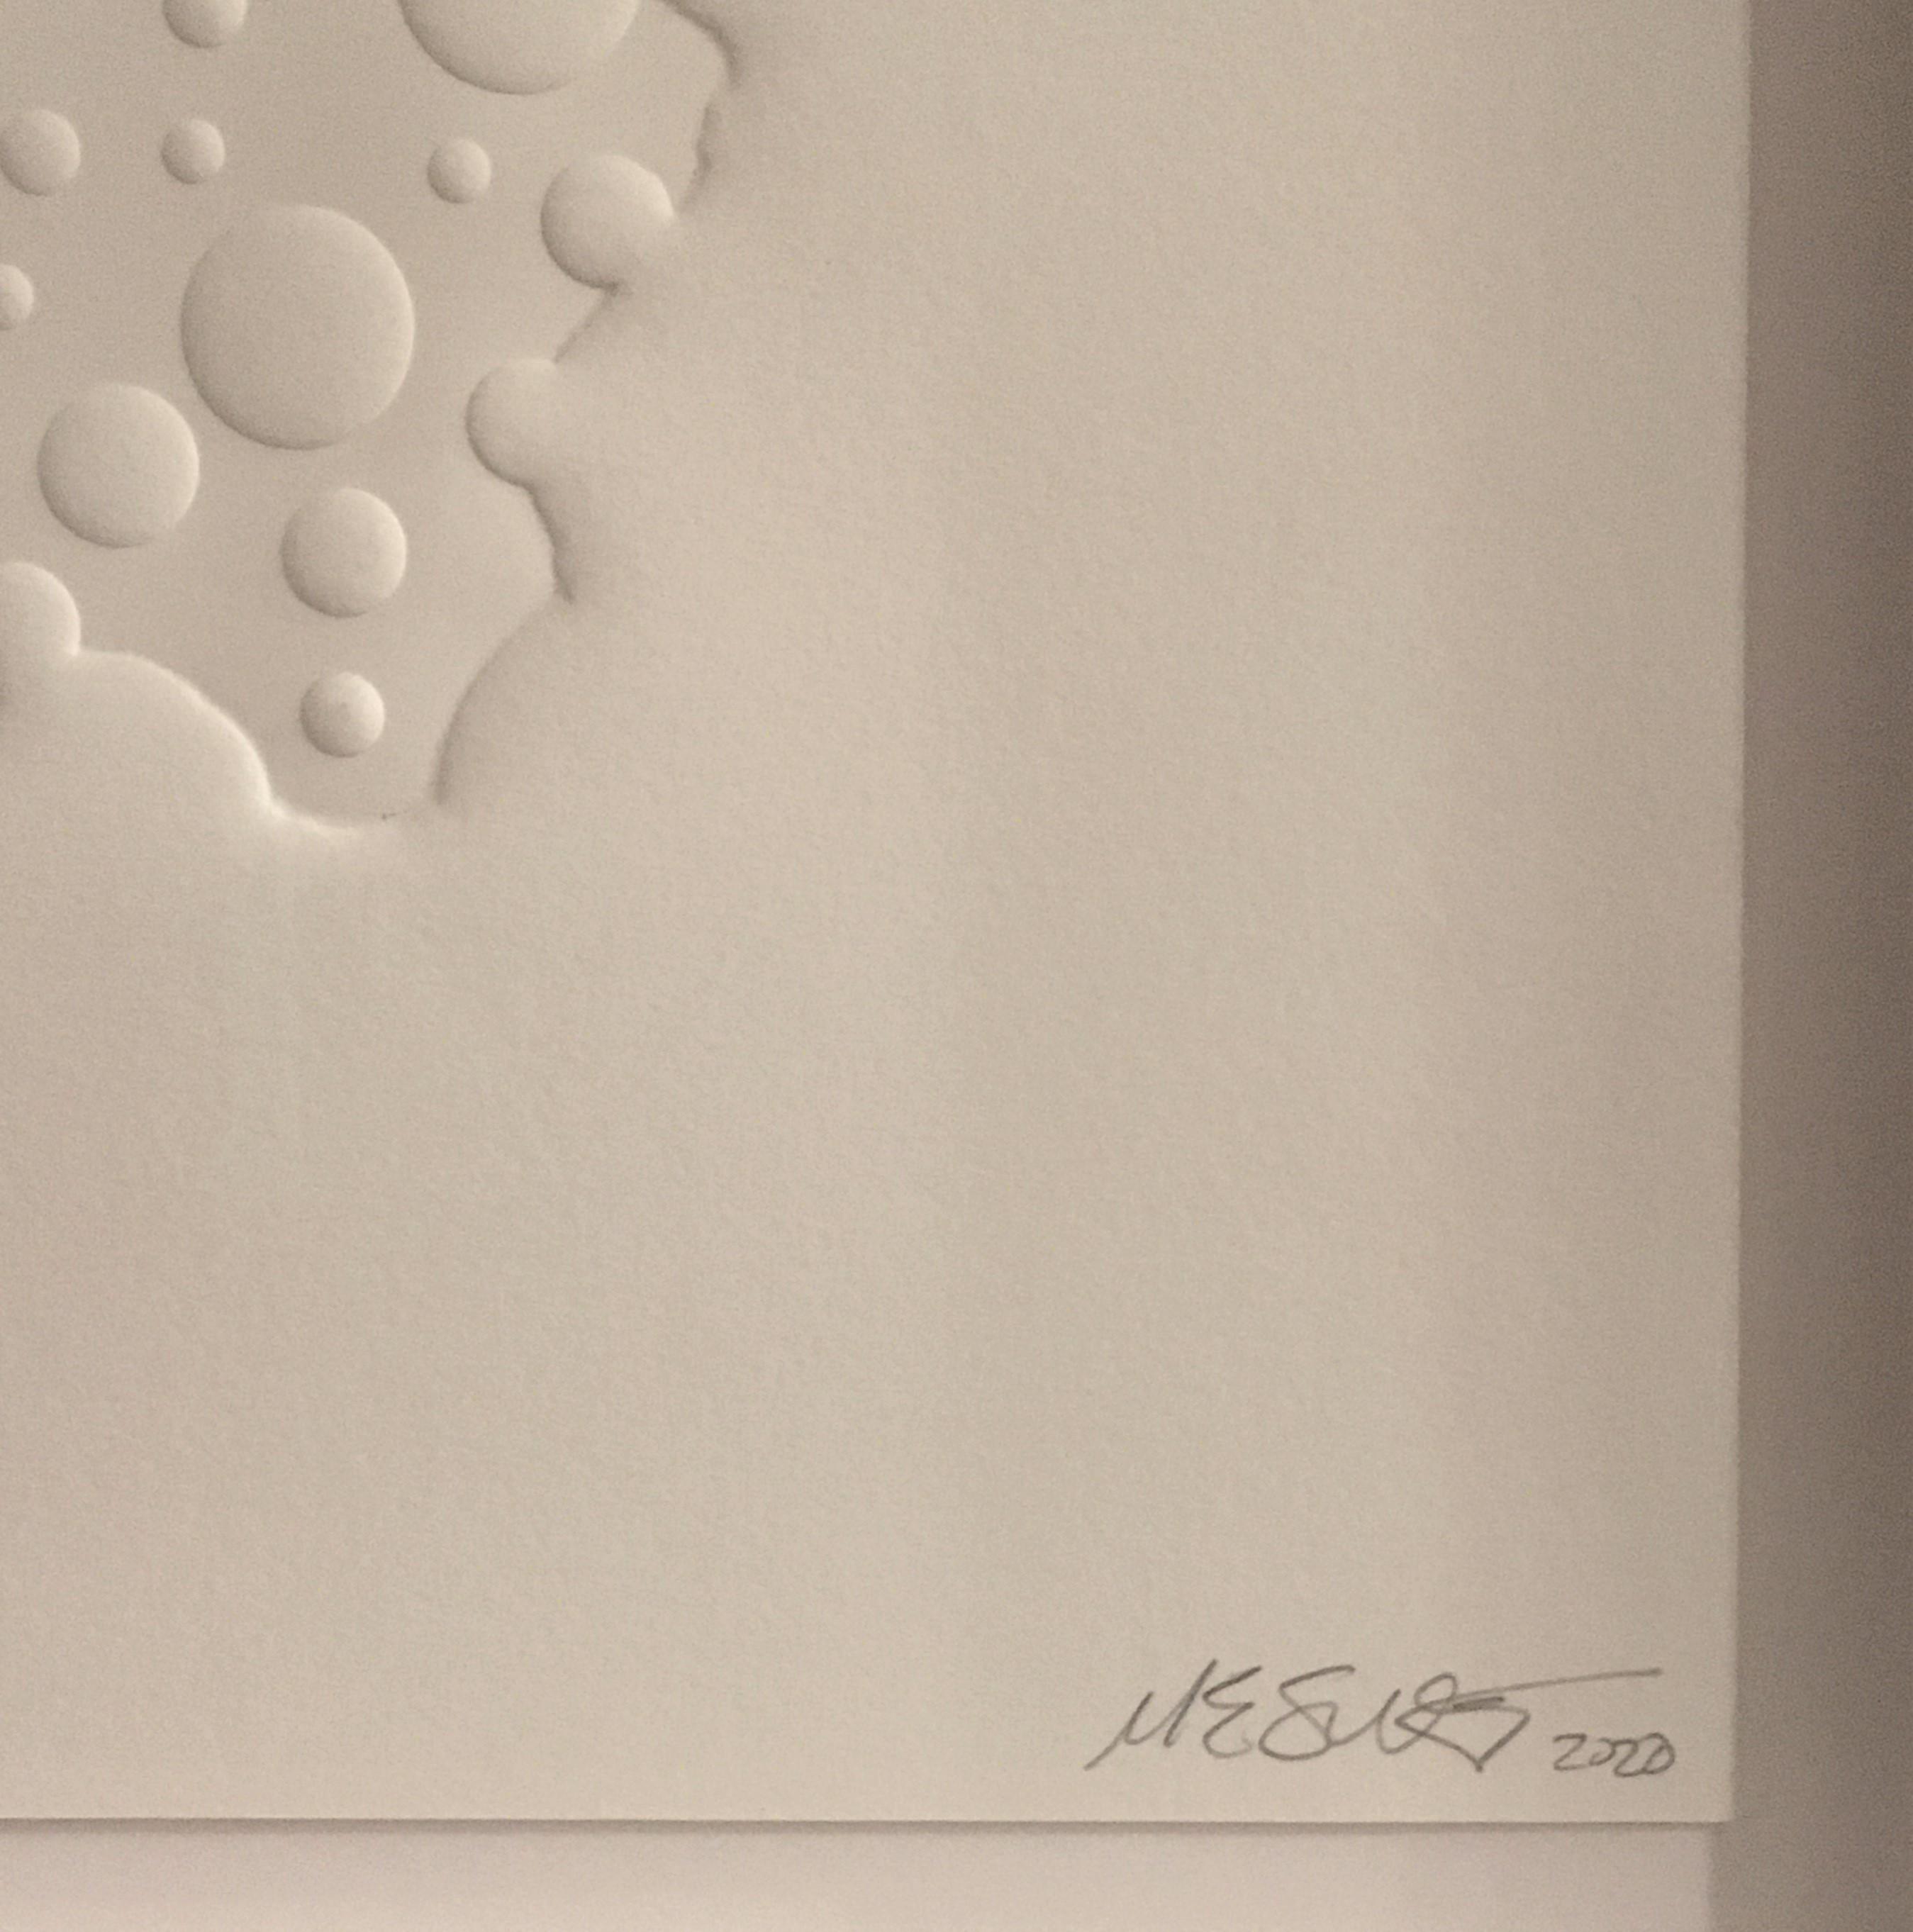 Ohne Titel Geprägtes Papier, Abmessungen, Arbeit auf Papier, Bewegung, weiß, ungerahmt (Grau), Abstract Print, von Michael Enn Sirvet